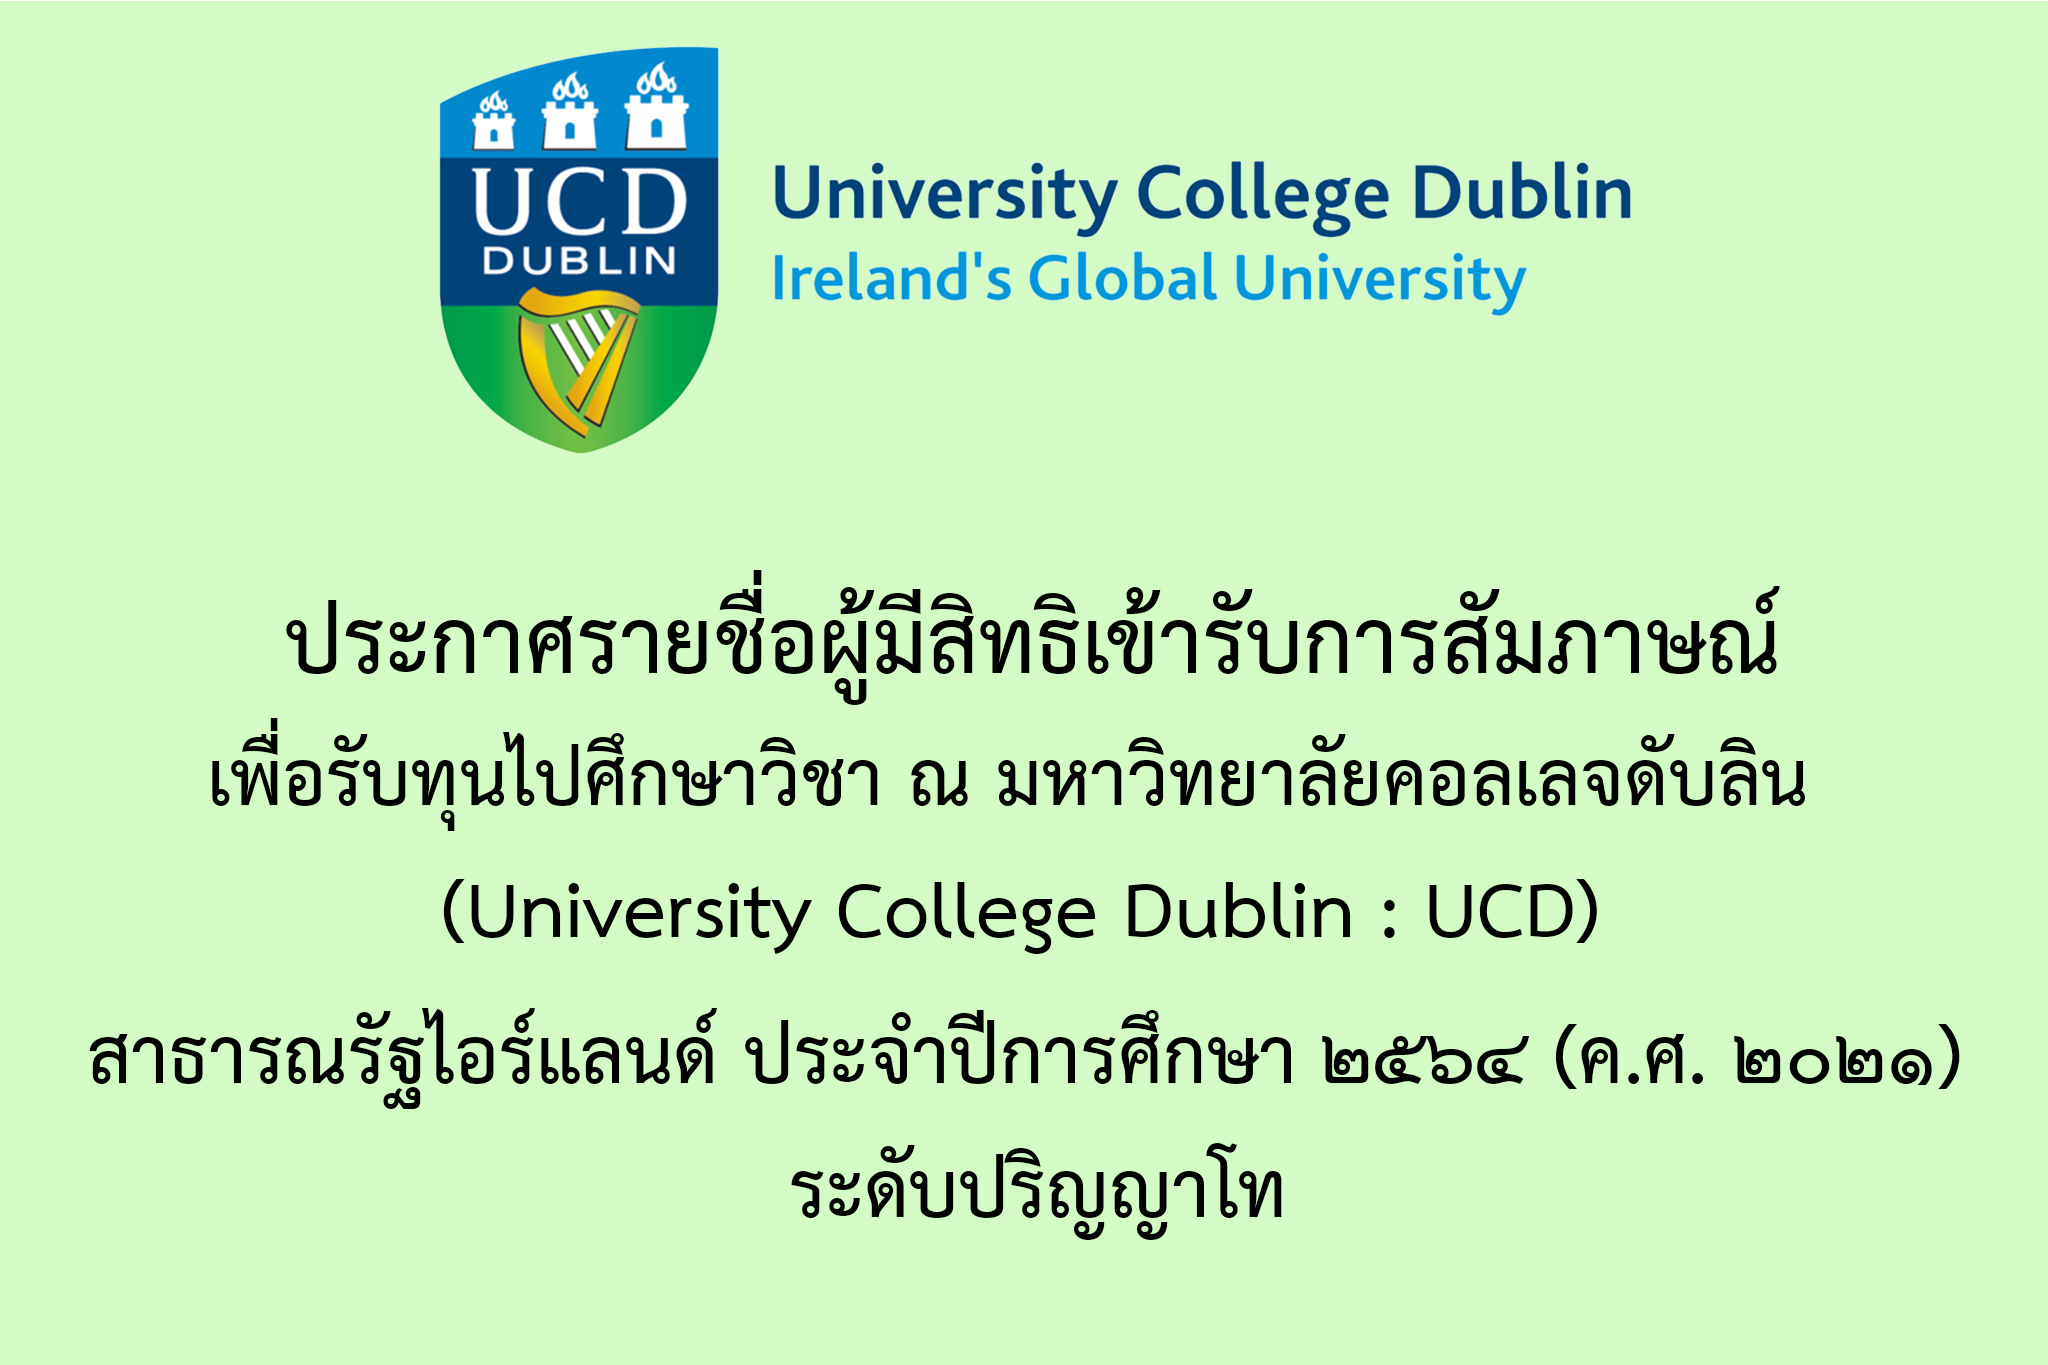 ประกาศรายชื่อผู้มีสิทธิเข้ารับการสัมภาษณ์เพื่อรับทุนการศึกษาไปศึกษาวิชา ณ มหาวิทยาลัยคอลเลจดับลิน (University College Dublin : UCD) สาธารณรัฐไอร์แลนด์ ประจำปีการศึกษา ๒๕๖๔ (ค.ศ. ๒๐๒๑)  ระดับปริญญาโท